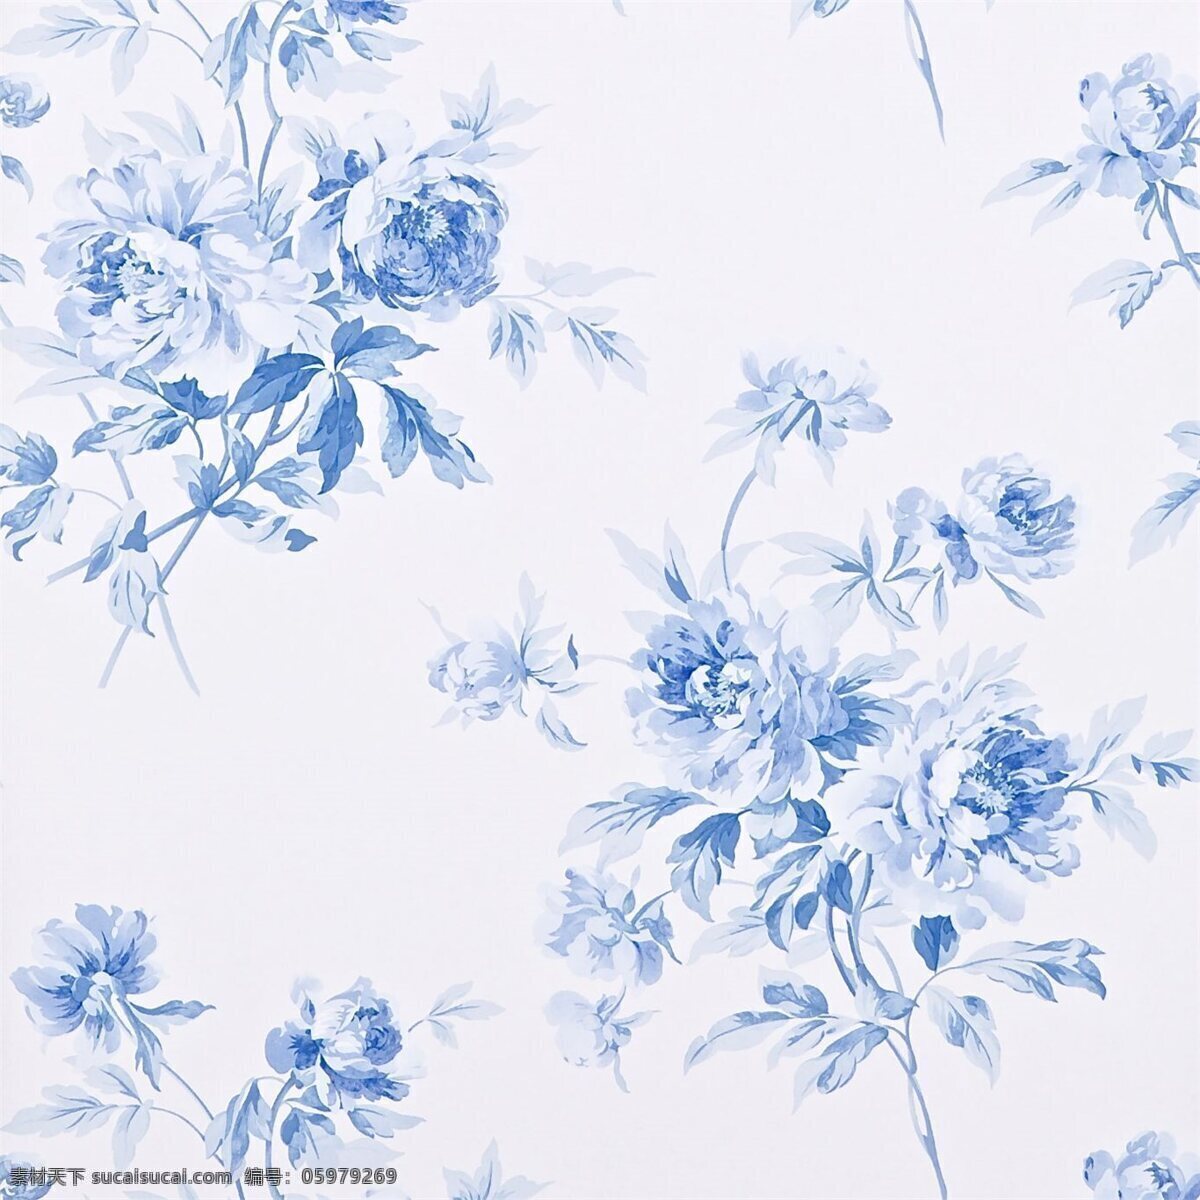 蓝色 花朵 图案 壁纸 中式花纹背景 壁纸素材 无缝壁纸素材 欧式花纹 壁纸图片下载 装饰素材 装饰设计 花纹壁纸 简约壁纸 精美壁纸